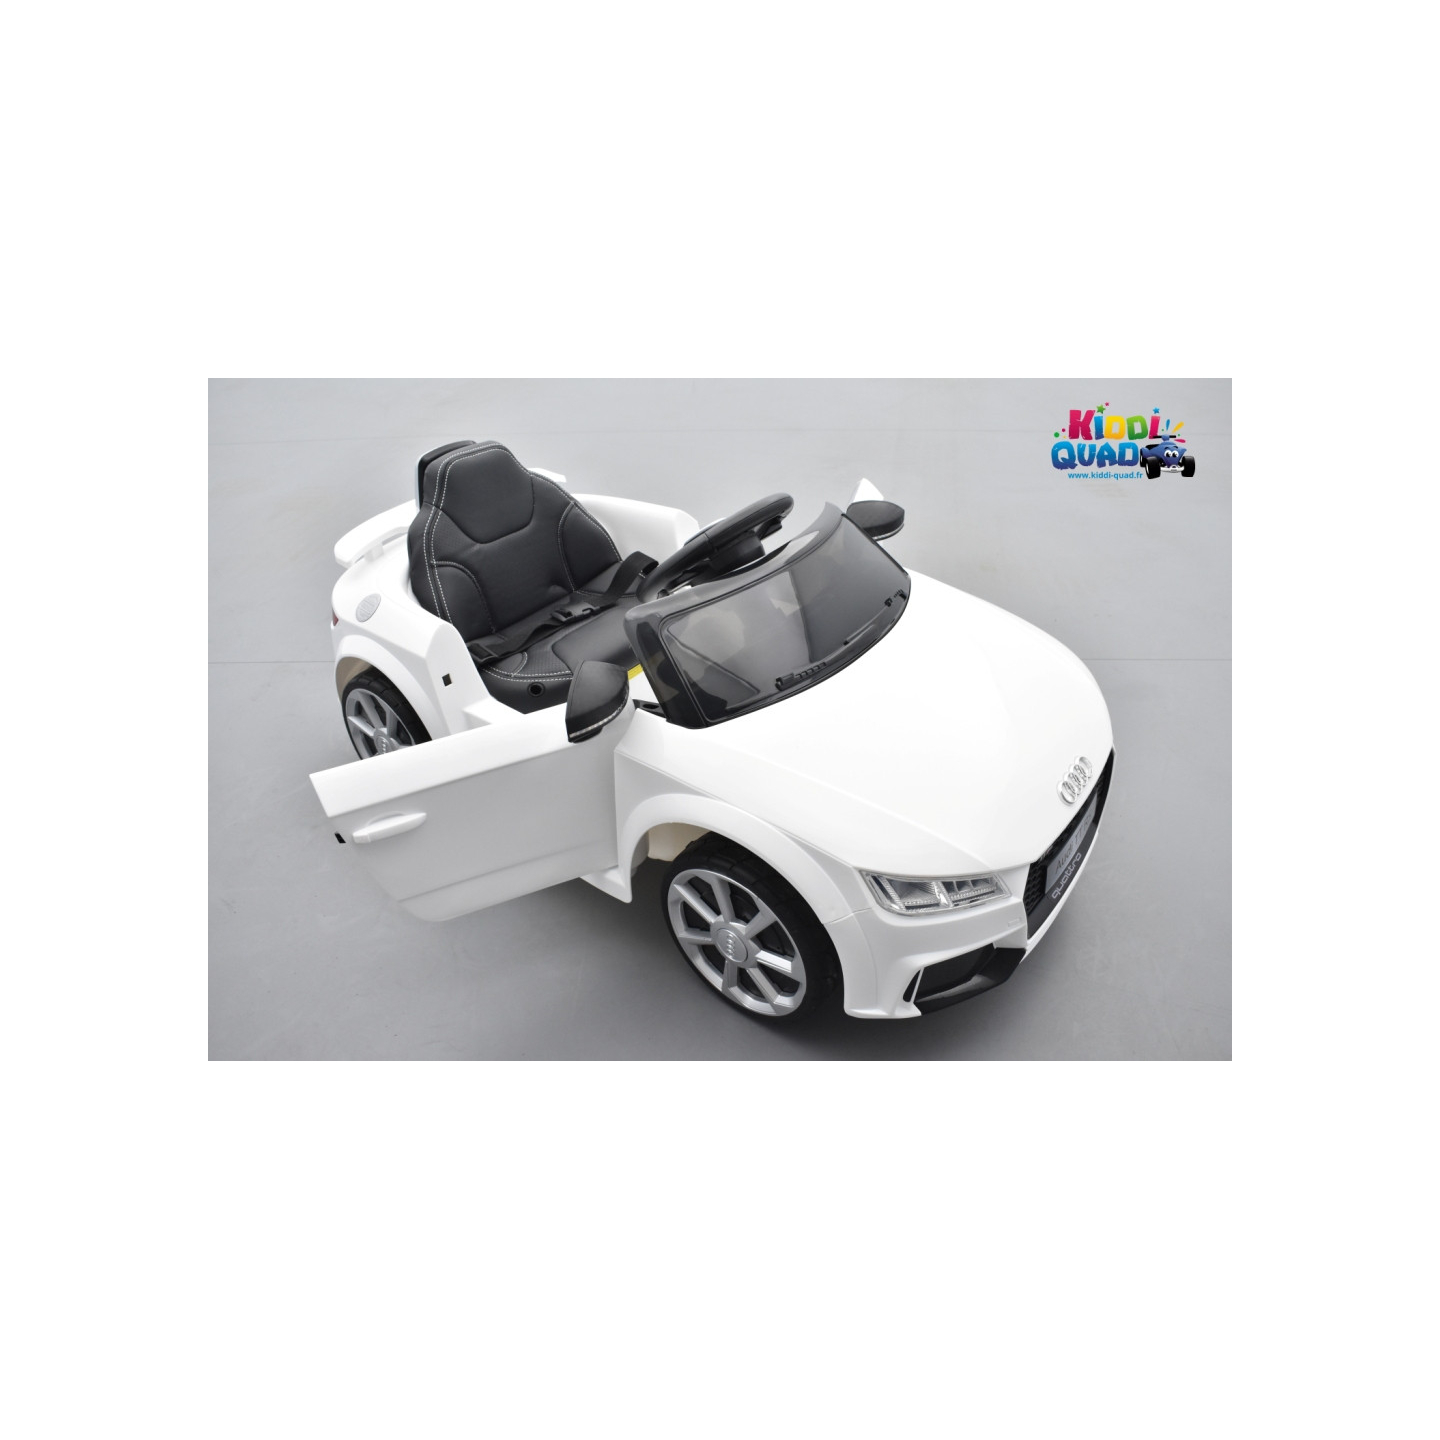 Audi TT RS pour enfant 12 volts avec télécommande parentale 2.4 GHz